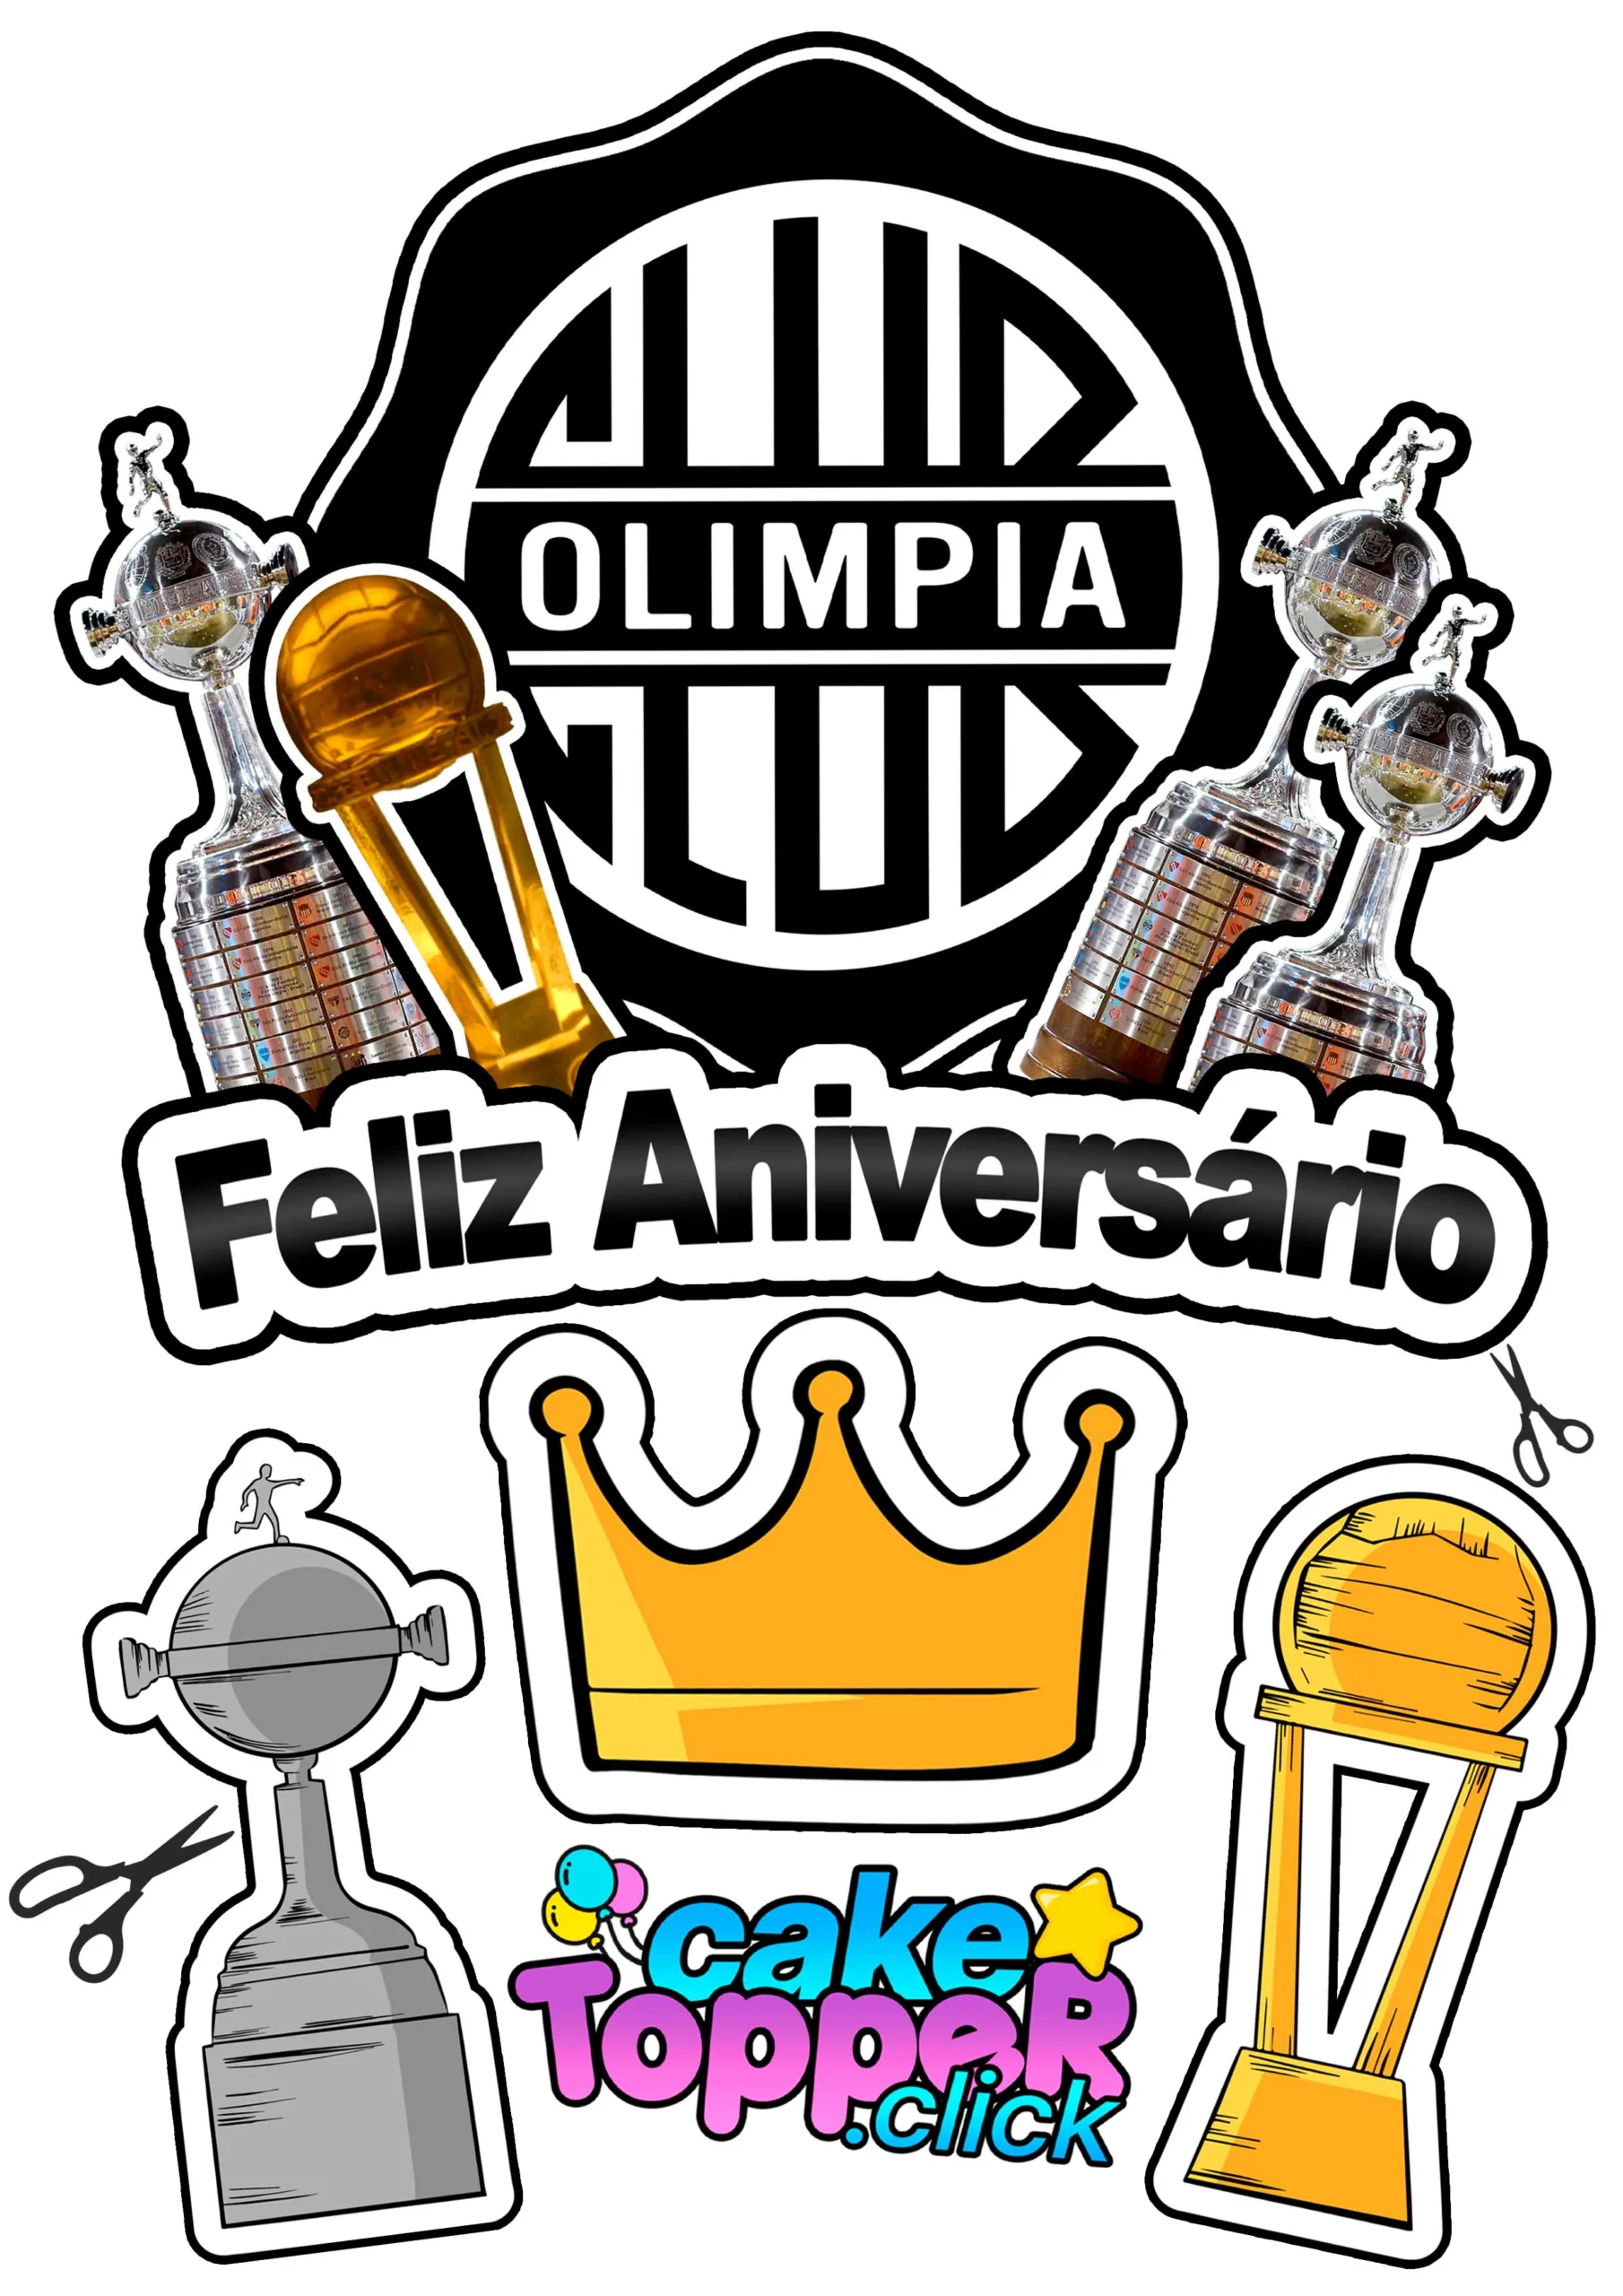 Club Olimpia